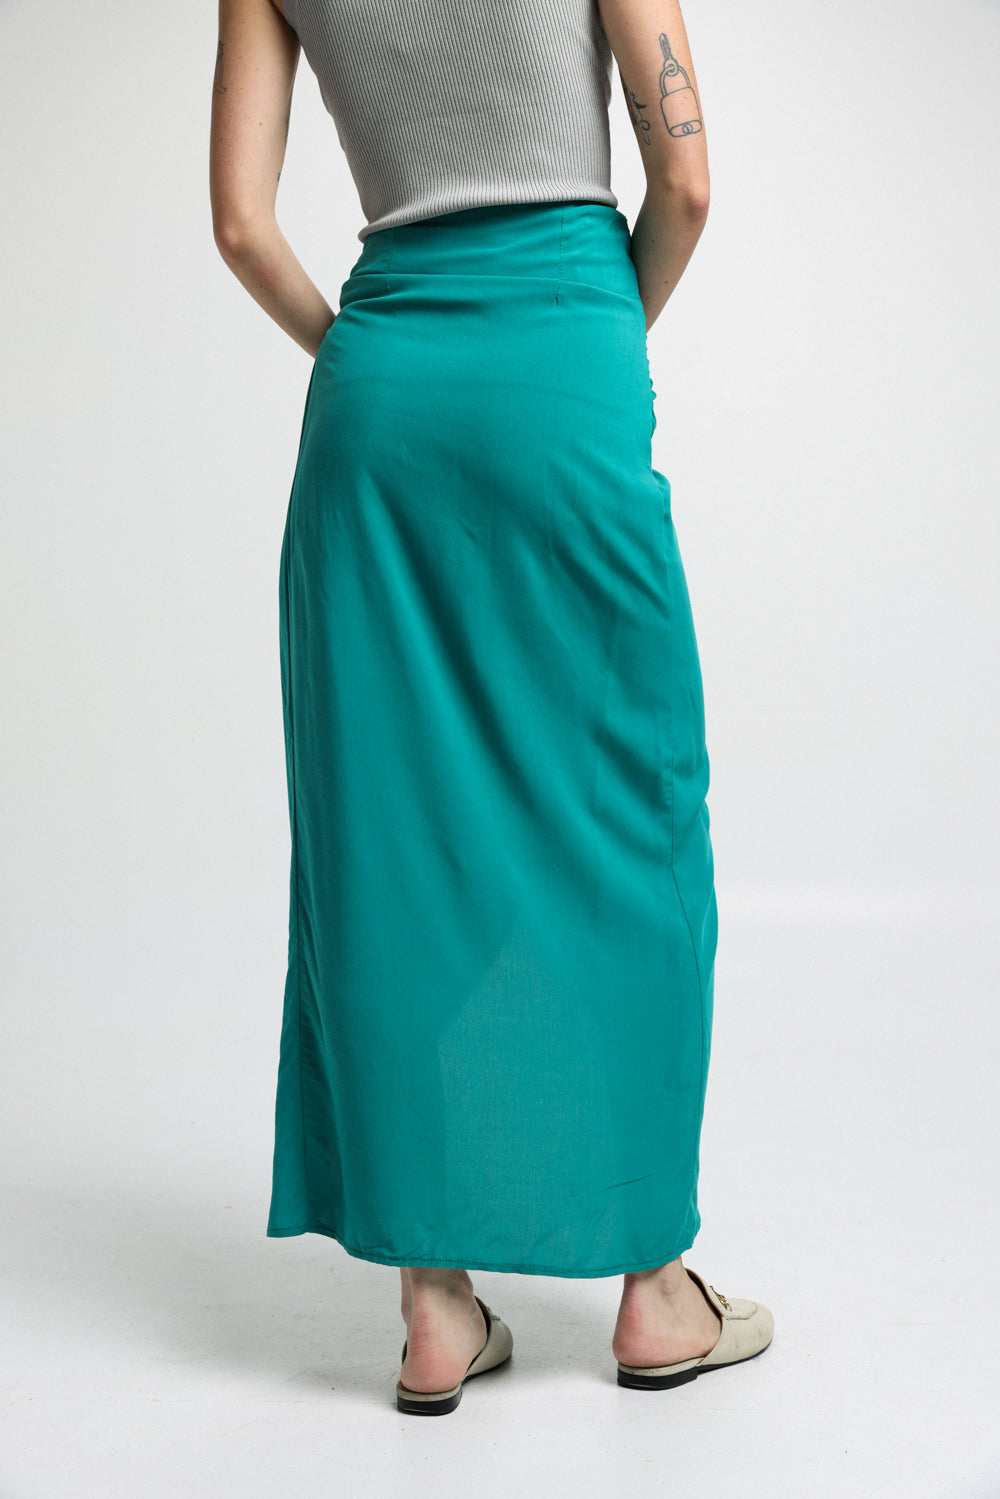 חצאית נשים ירוקה EE Green Skirt גב